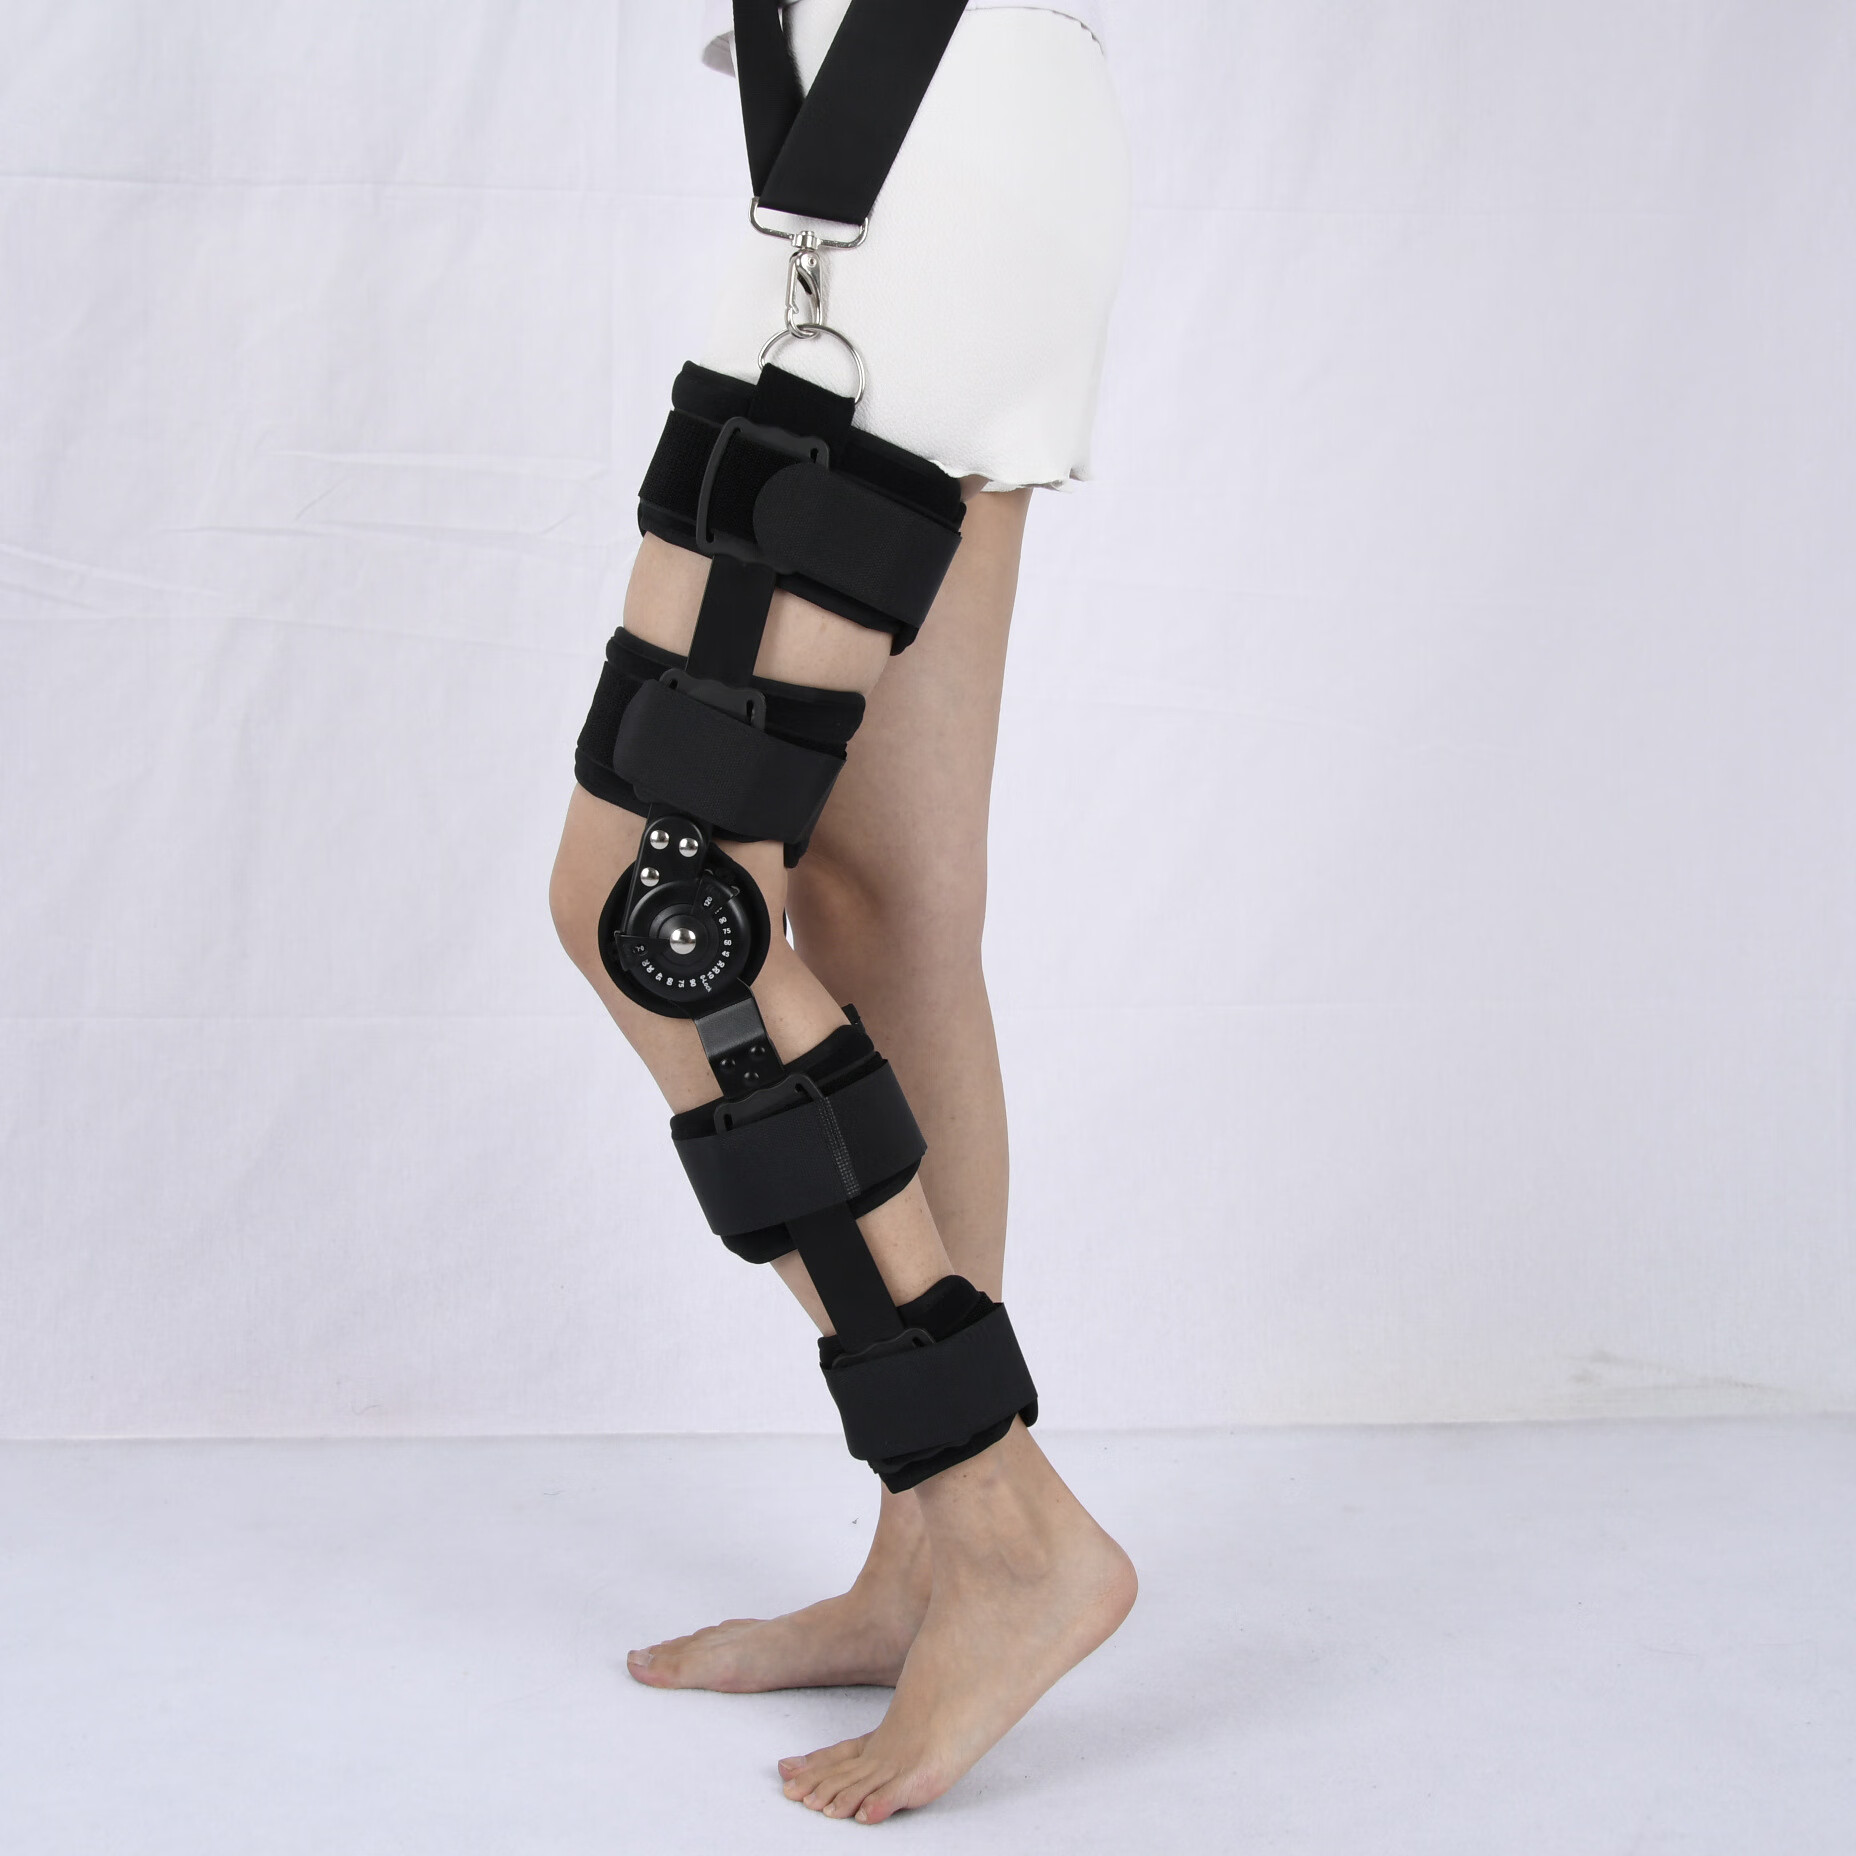 康兴达可调式卡盘 膝部关节固定支具下肢护具 膝关节固定支具 腿部